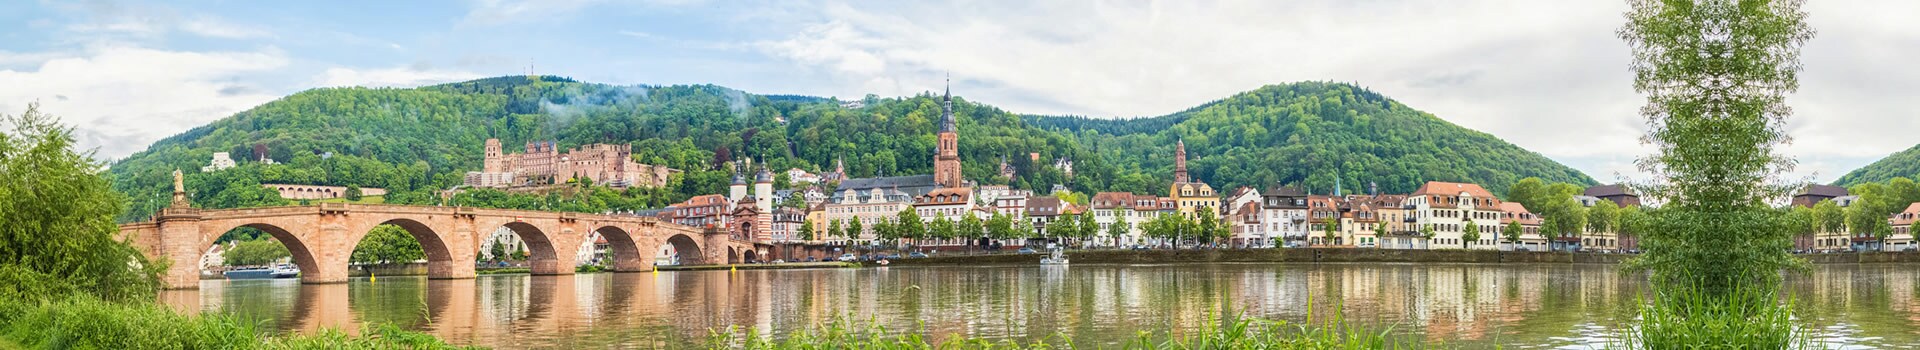 Madrid - Heidelberg